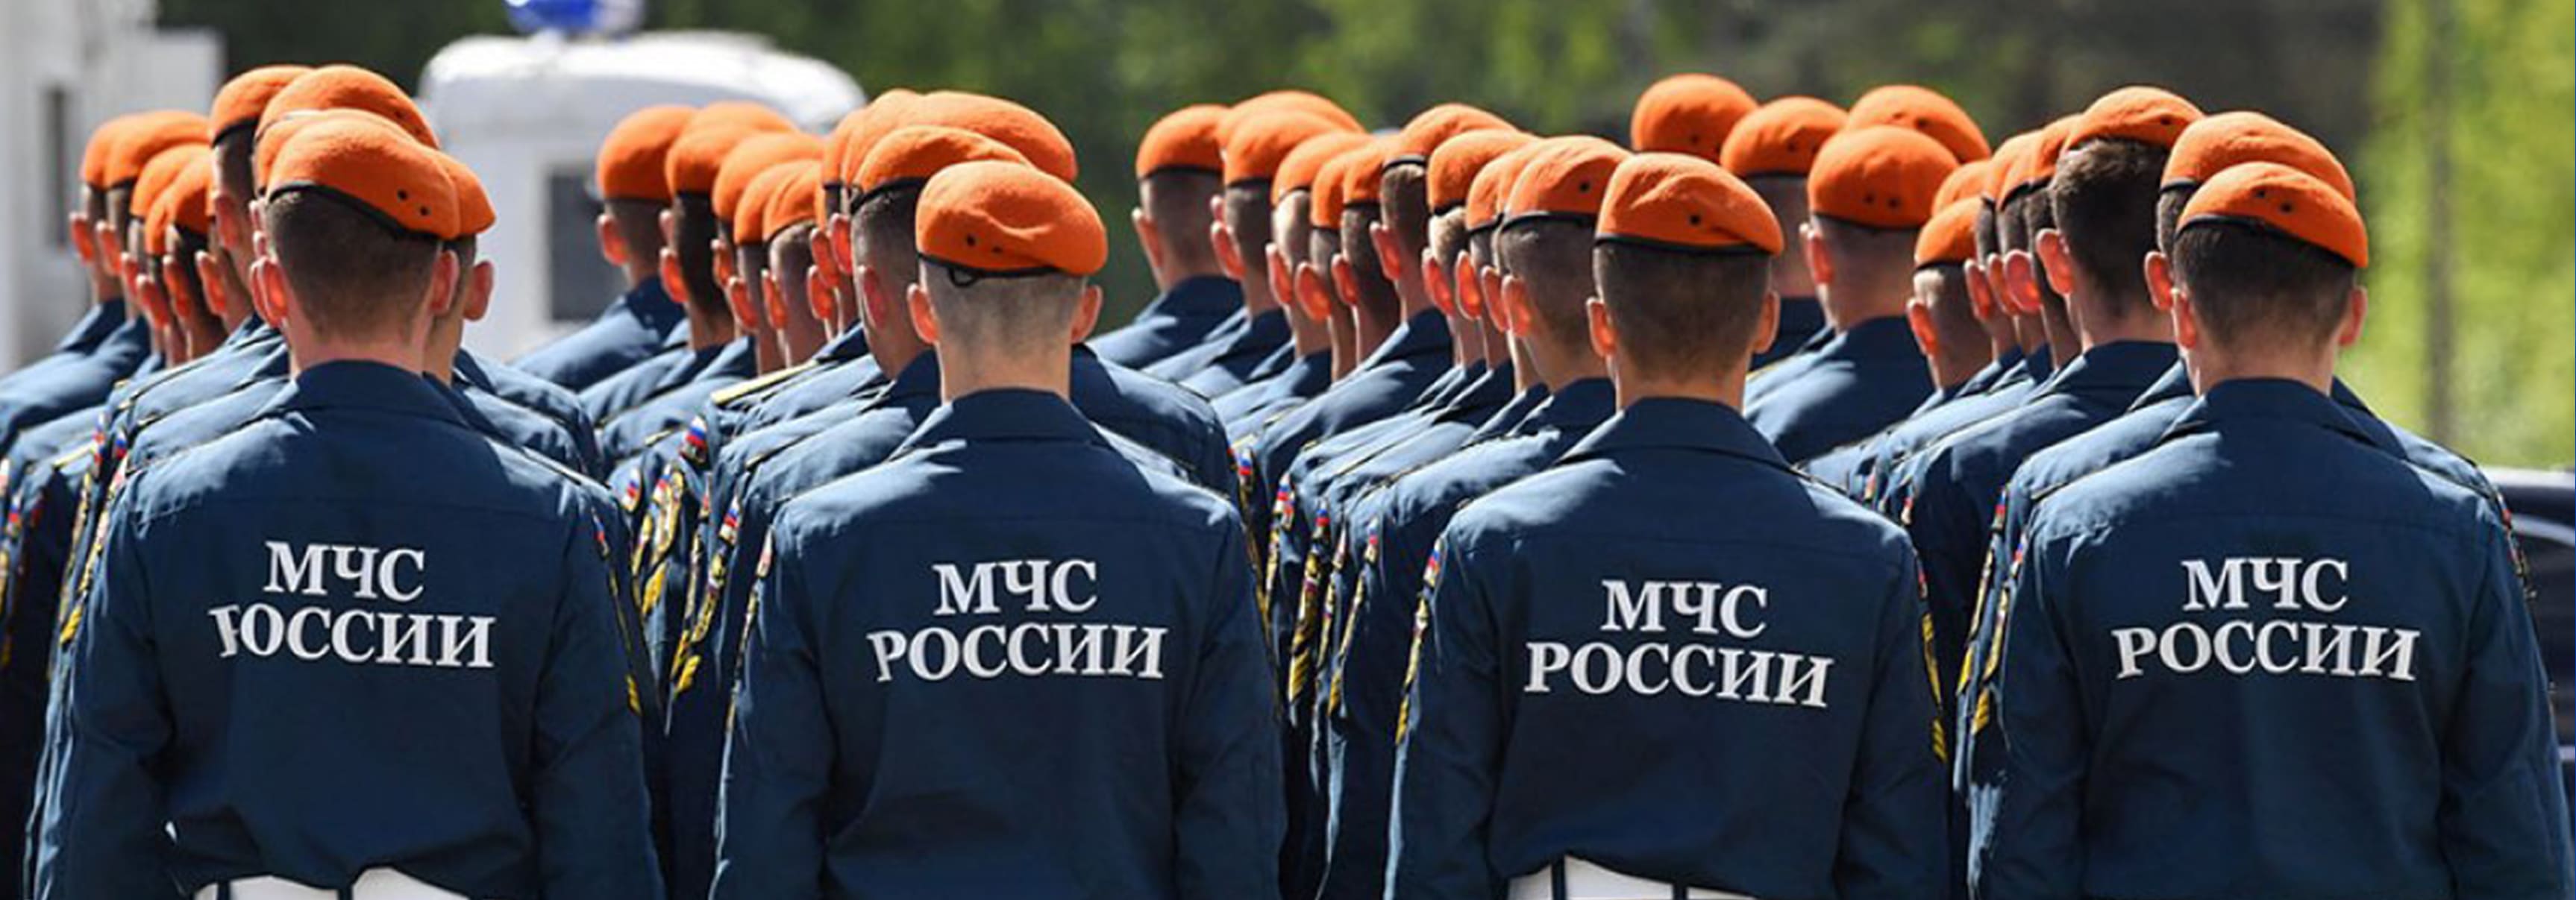 Главному спасательному ведомству страны - МЧС России 27 декабря 2020 года исполняется 30 лет